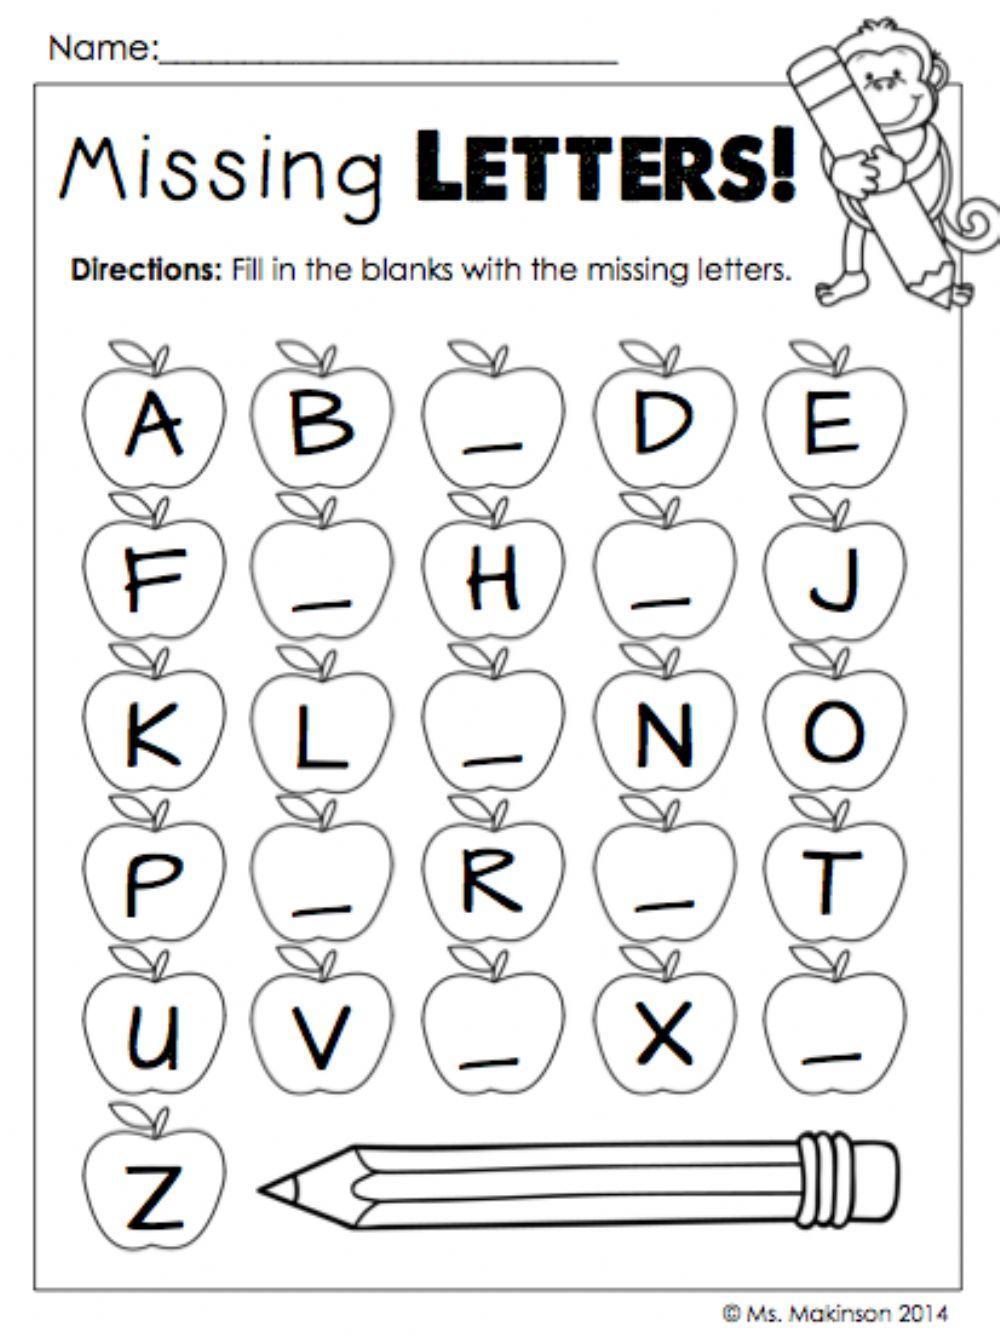 Writing activity 4. Letters задания для детей. Английский алфавит упражнения. ABC задания английский. Английский алфавит задания для дошкольников.